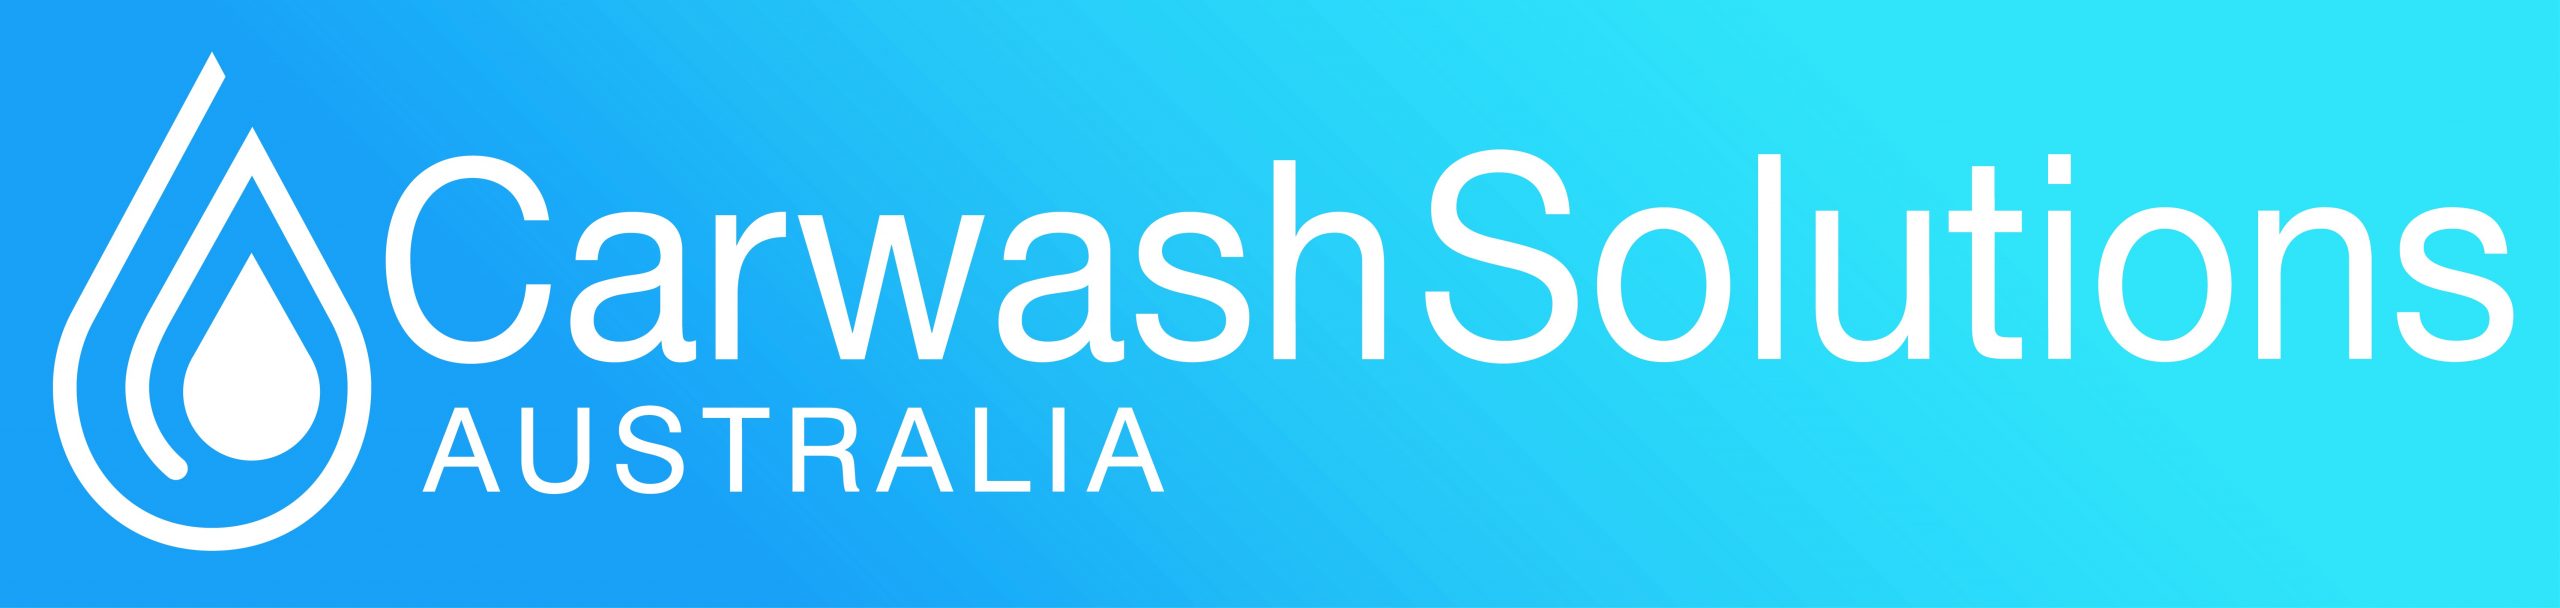 5 LANYARDS carwash solutions australia